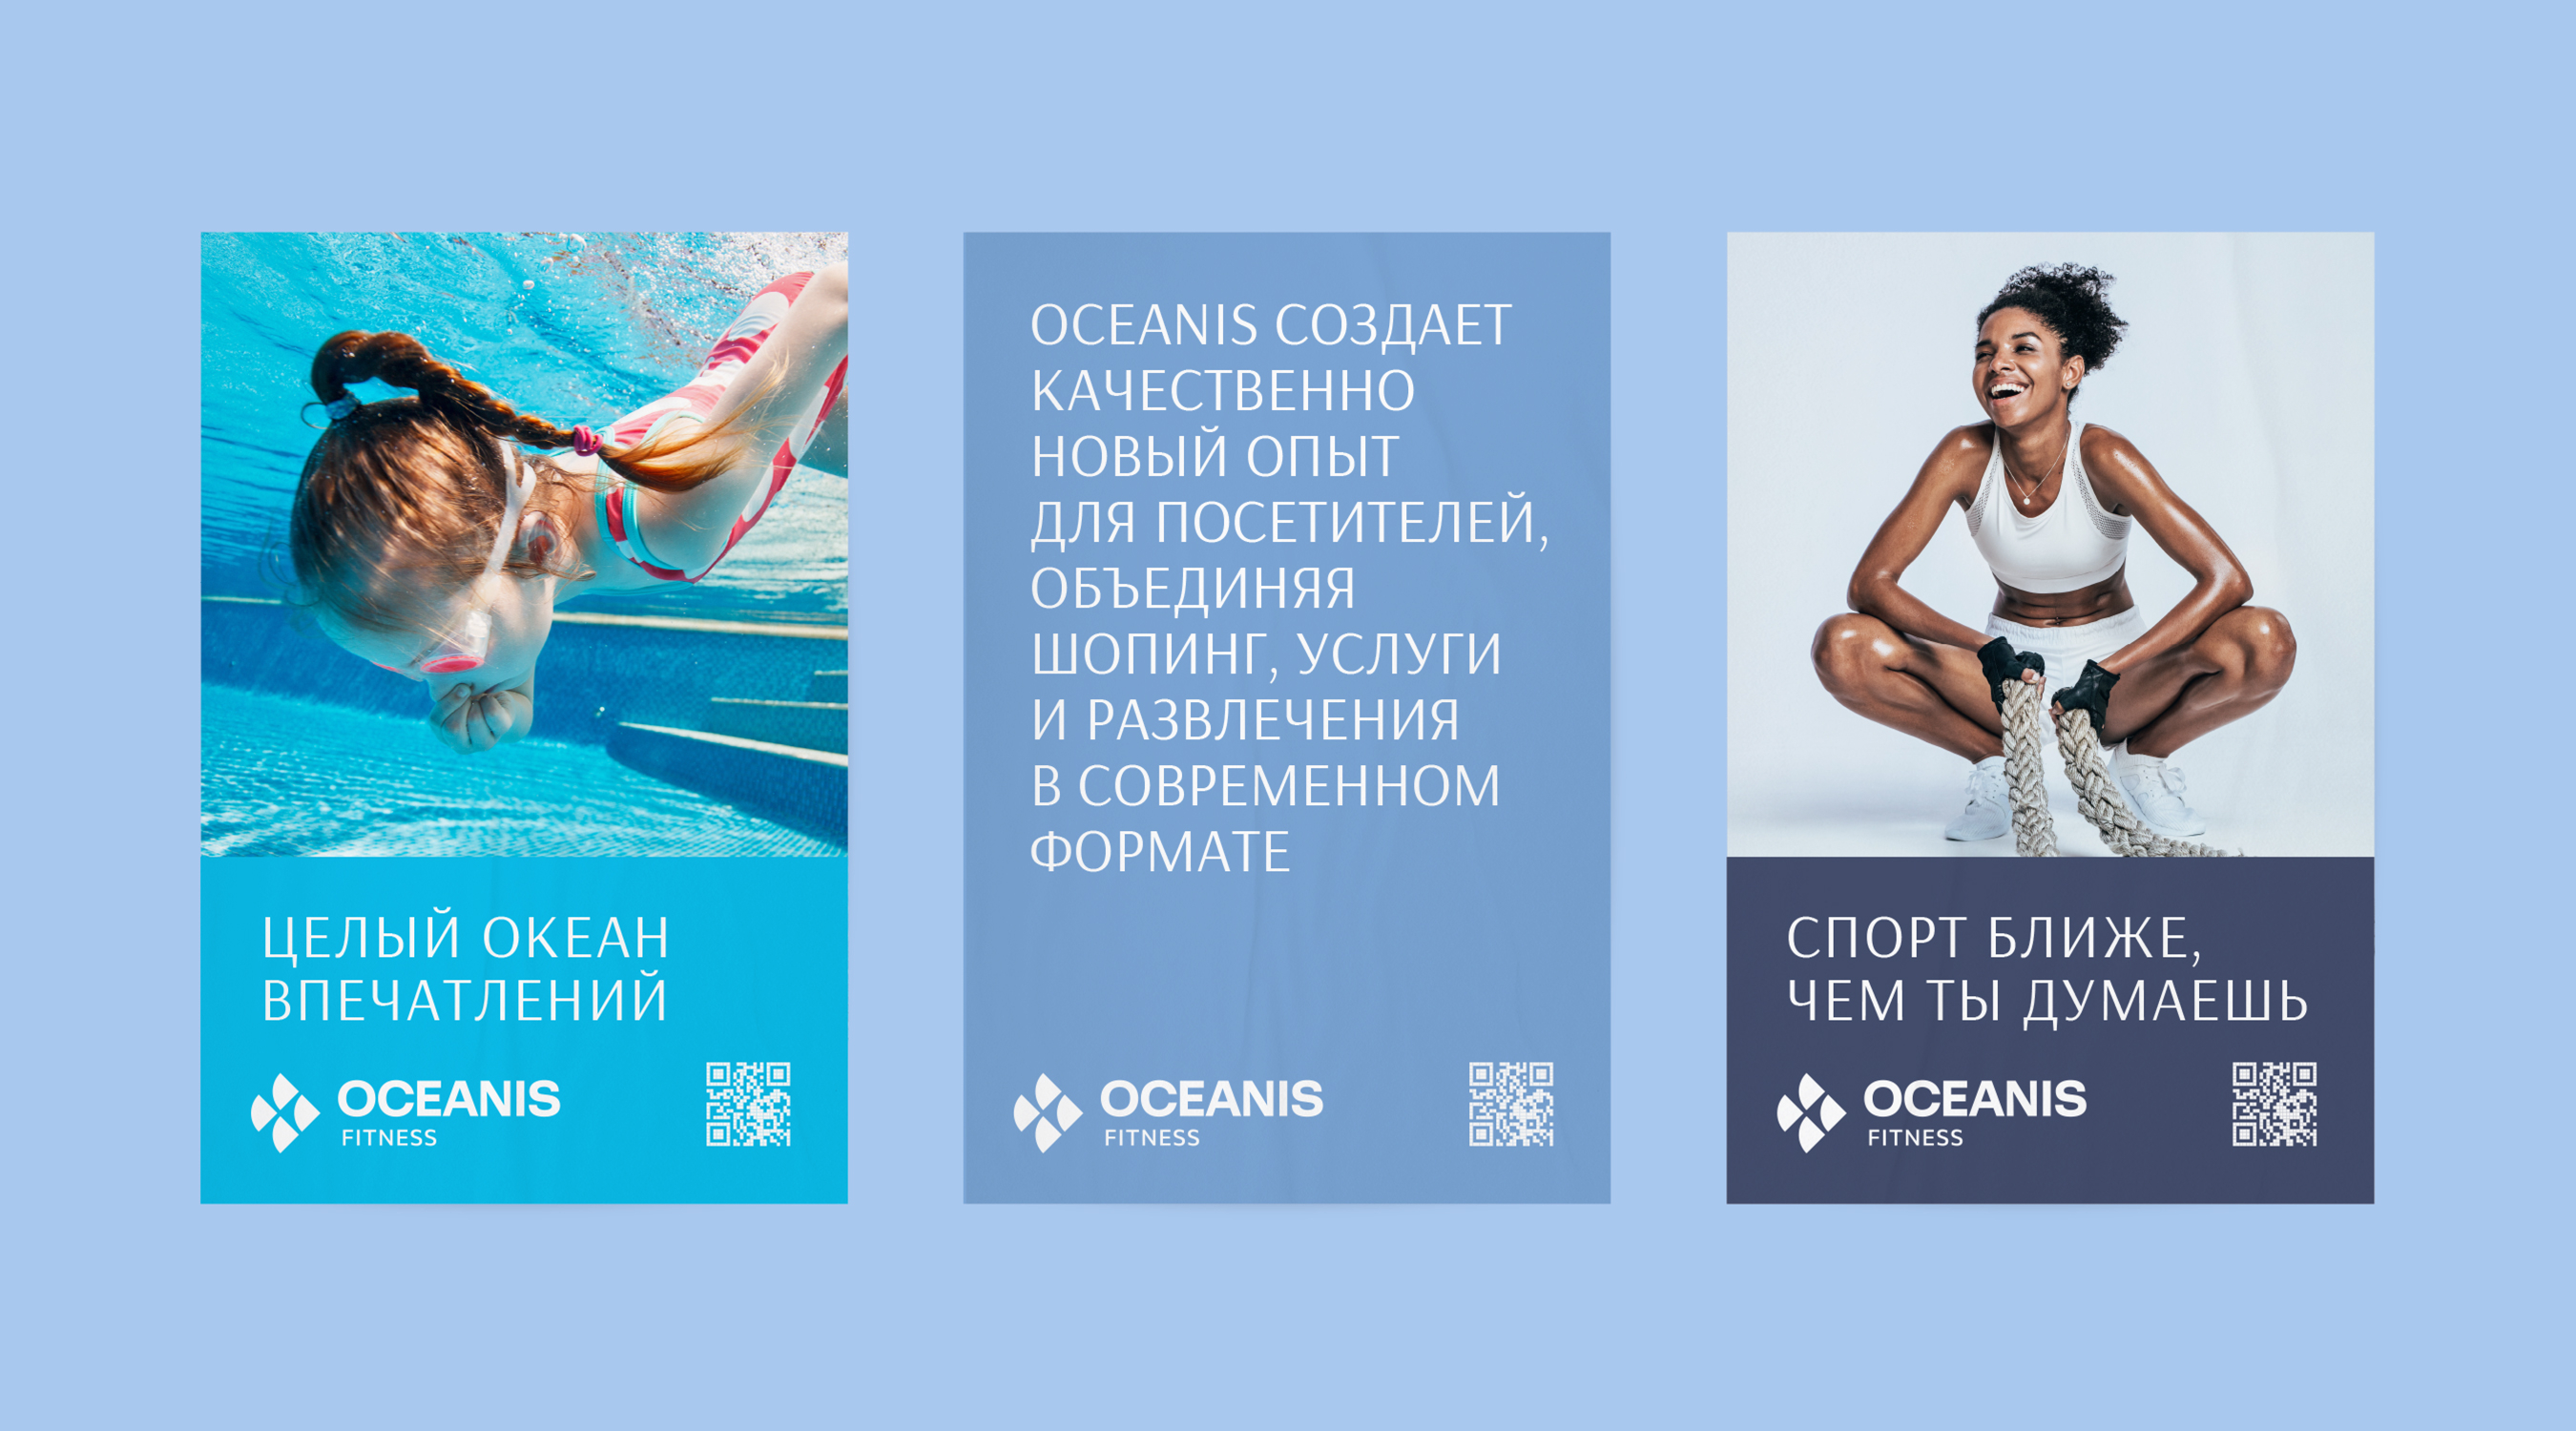 Дизайн рекламы ТРЦ OCEANIS 